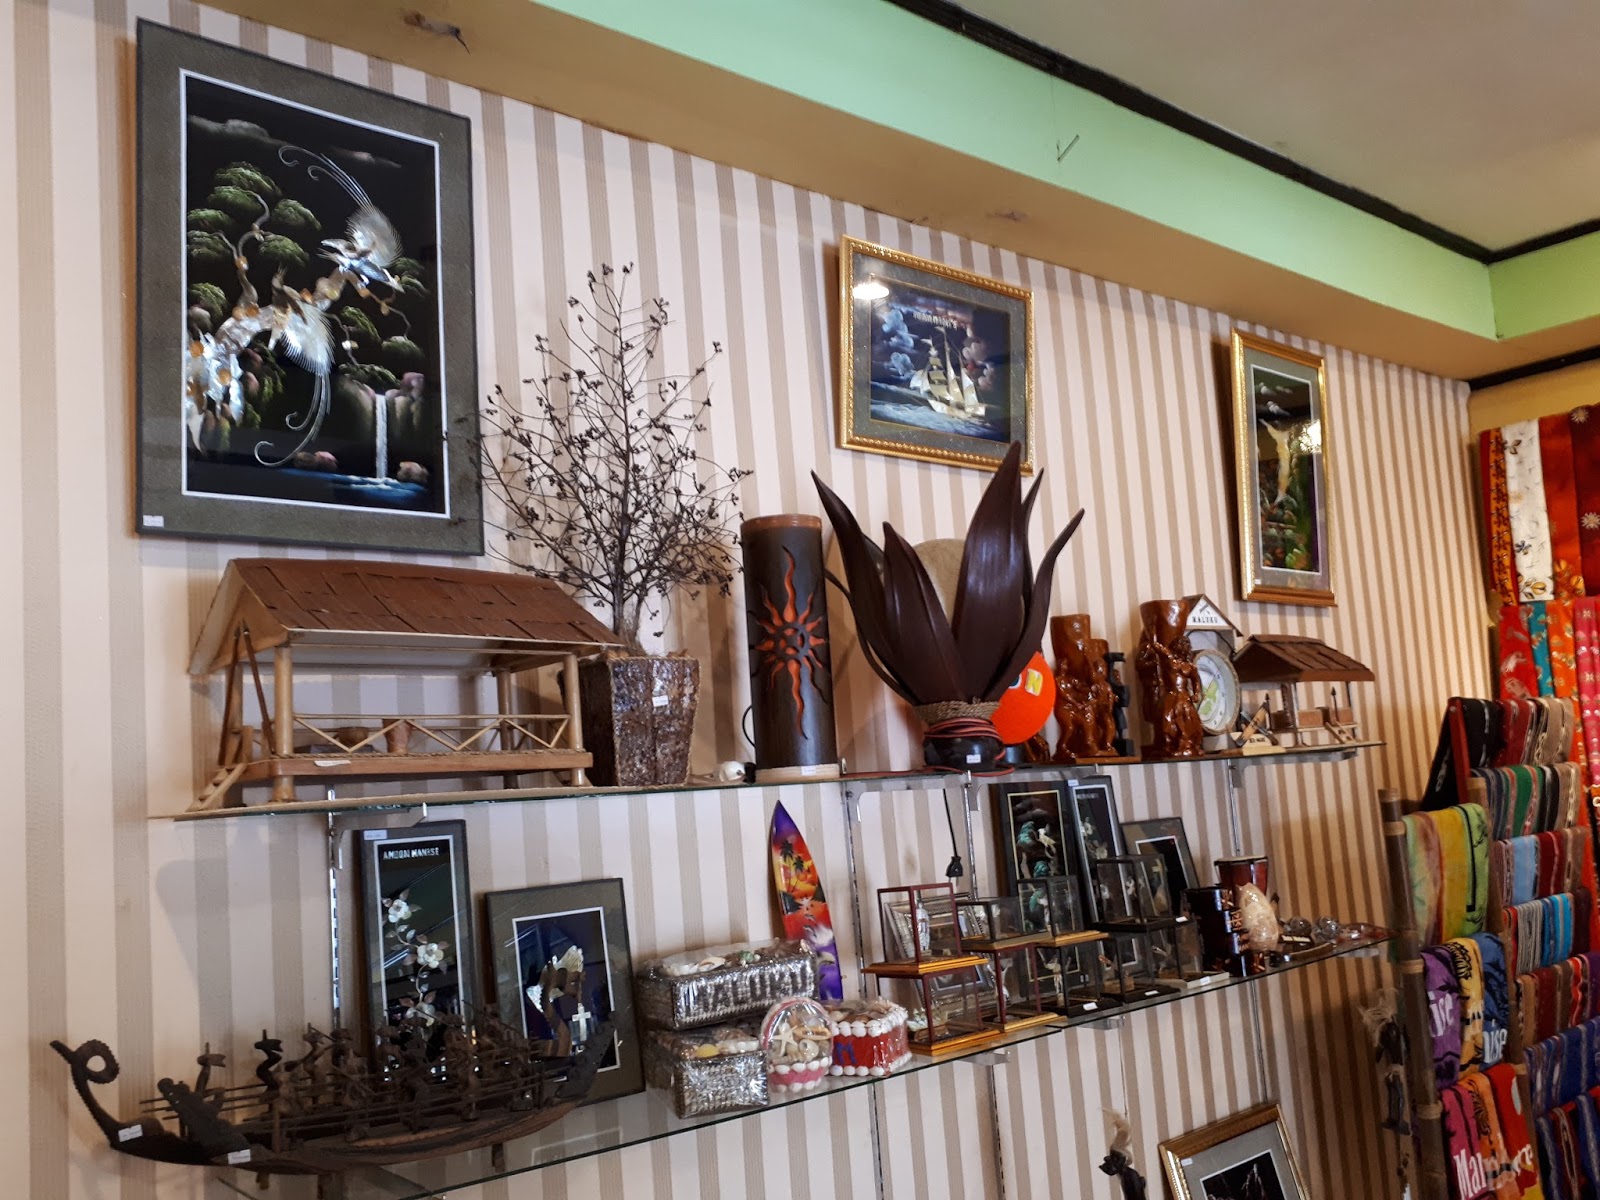 Souvenir Khas Maluku | The Ambon Manise Shop | Oleh-oleh